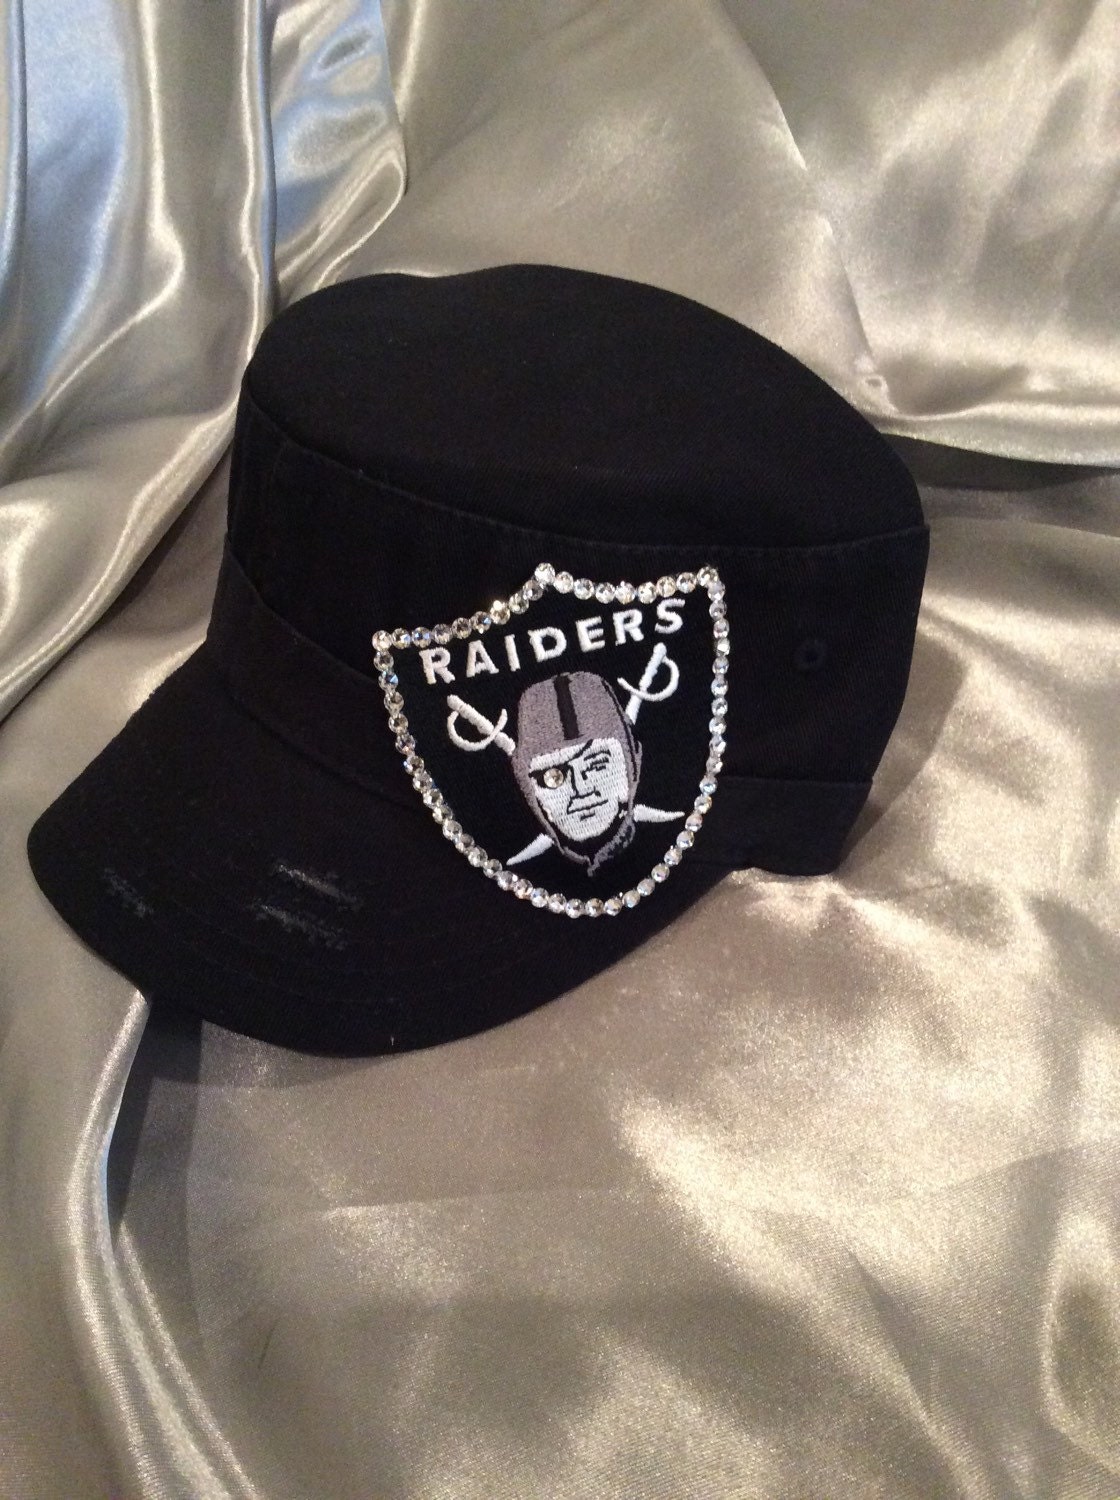 Bling Trucker Hats Raiders Raiders Hat Bling Hat Bling